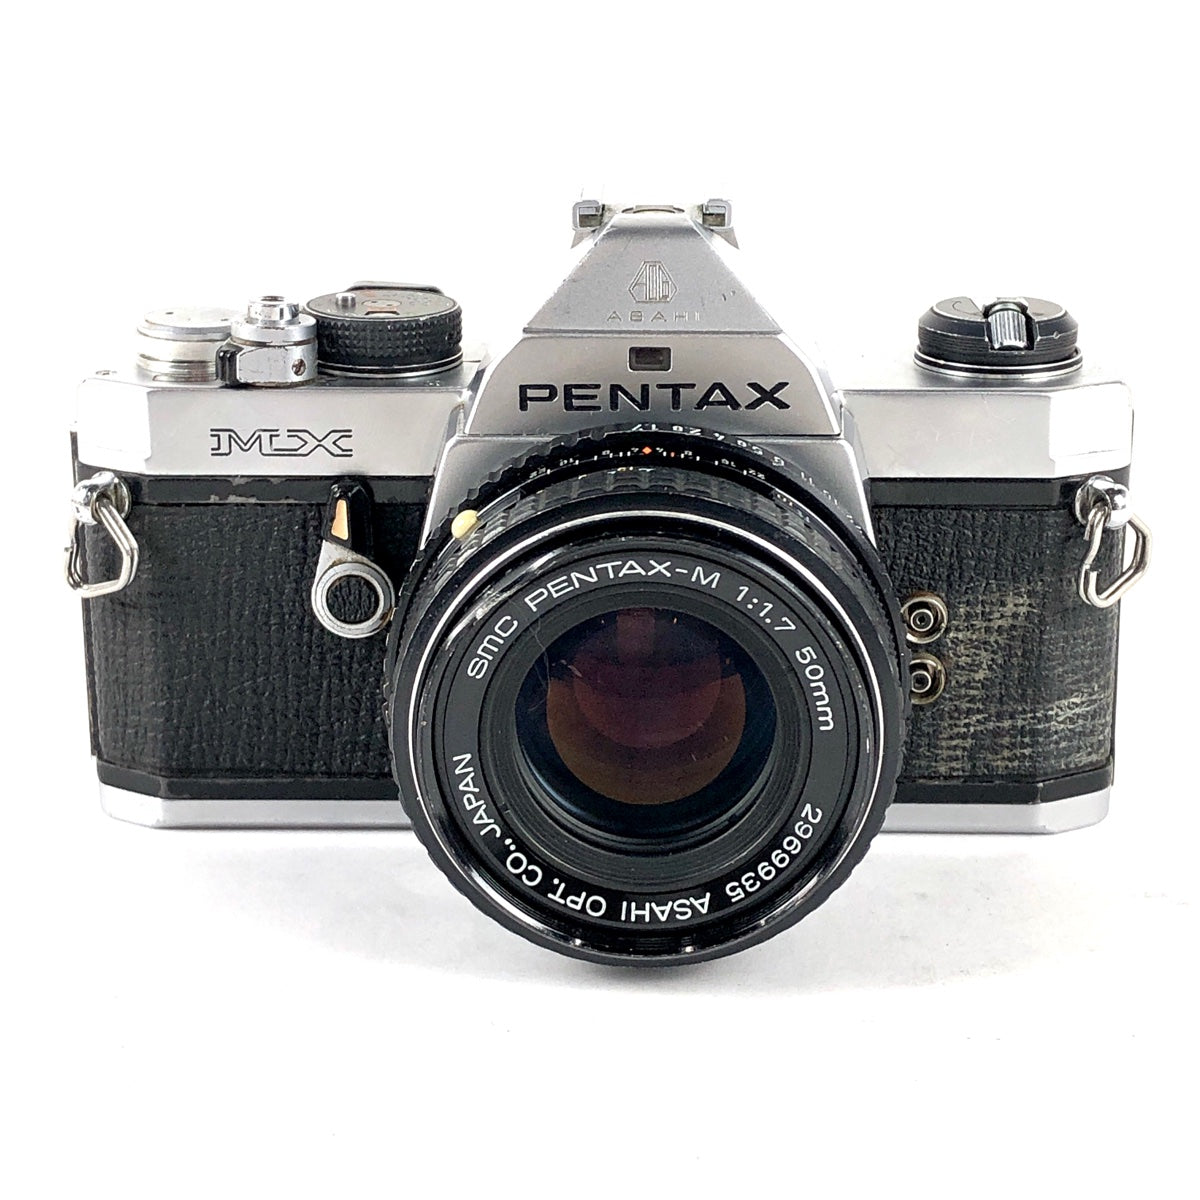 PENTAX  MX / smc PENTAX-M 50mm f/1.7